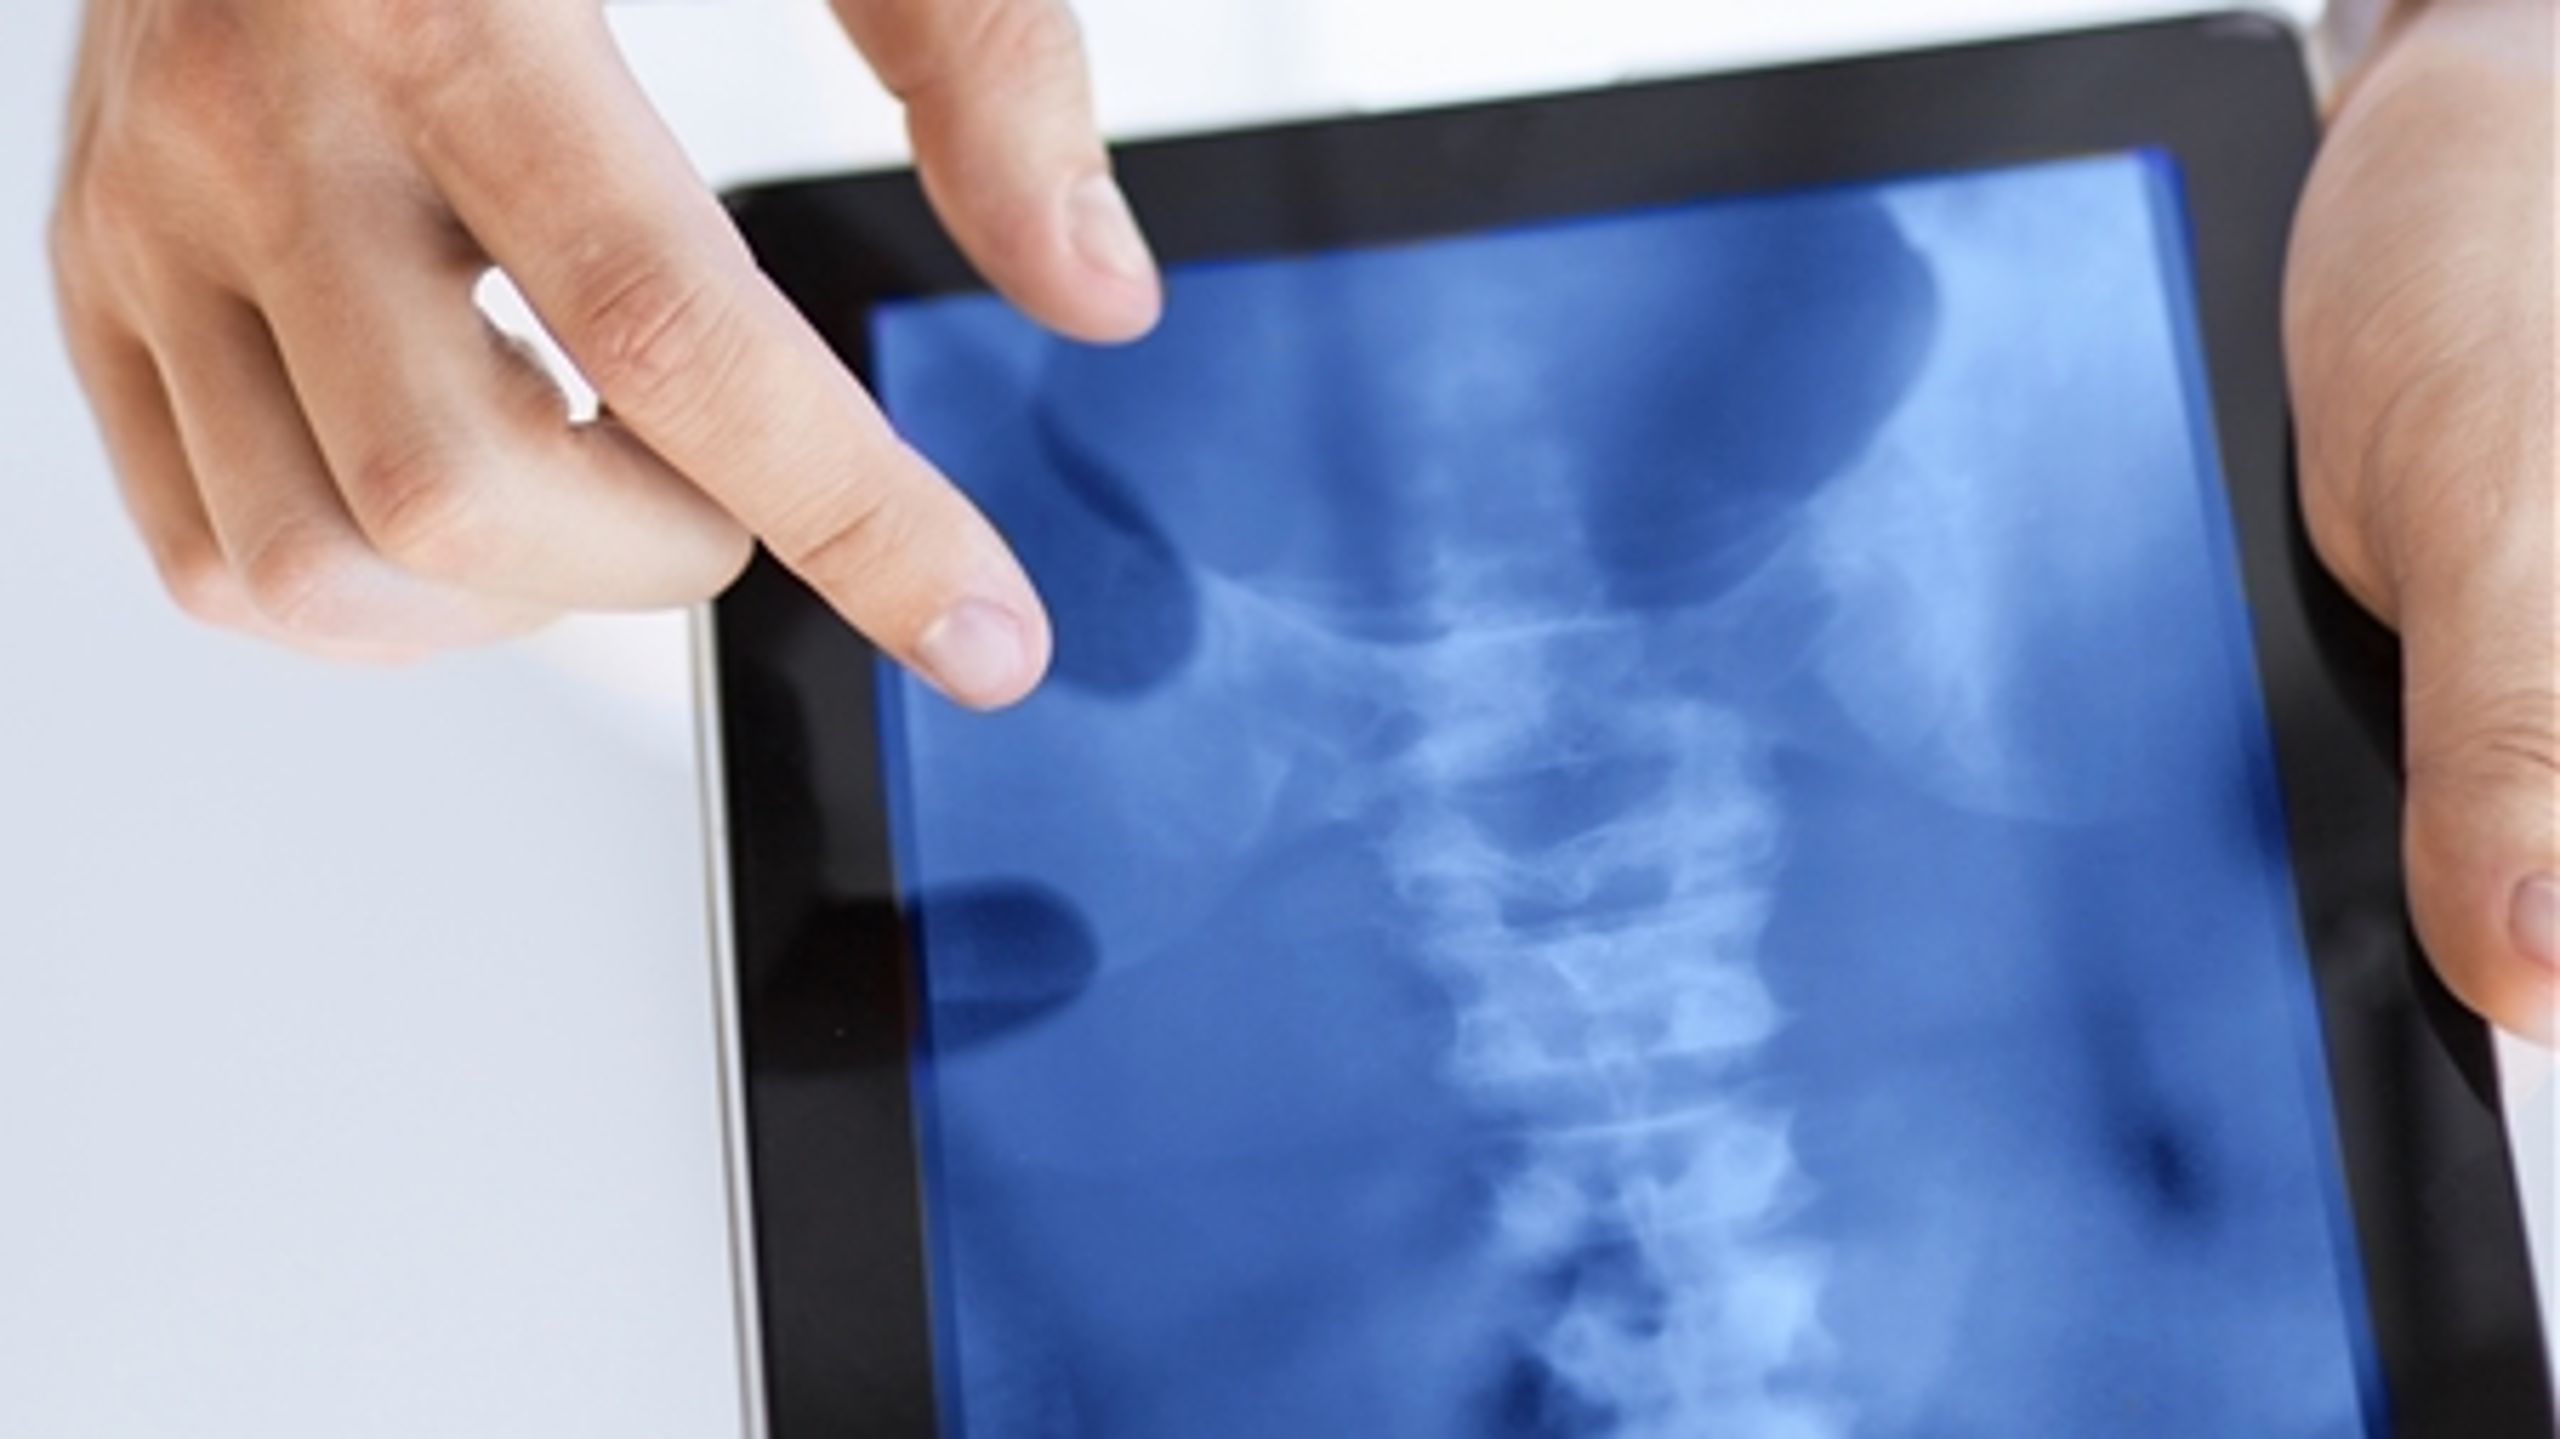 Medicinsk udstyr kan være alt fra røntgenapparater til hæfteplaster og operationsudstyr.